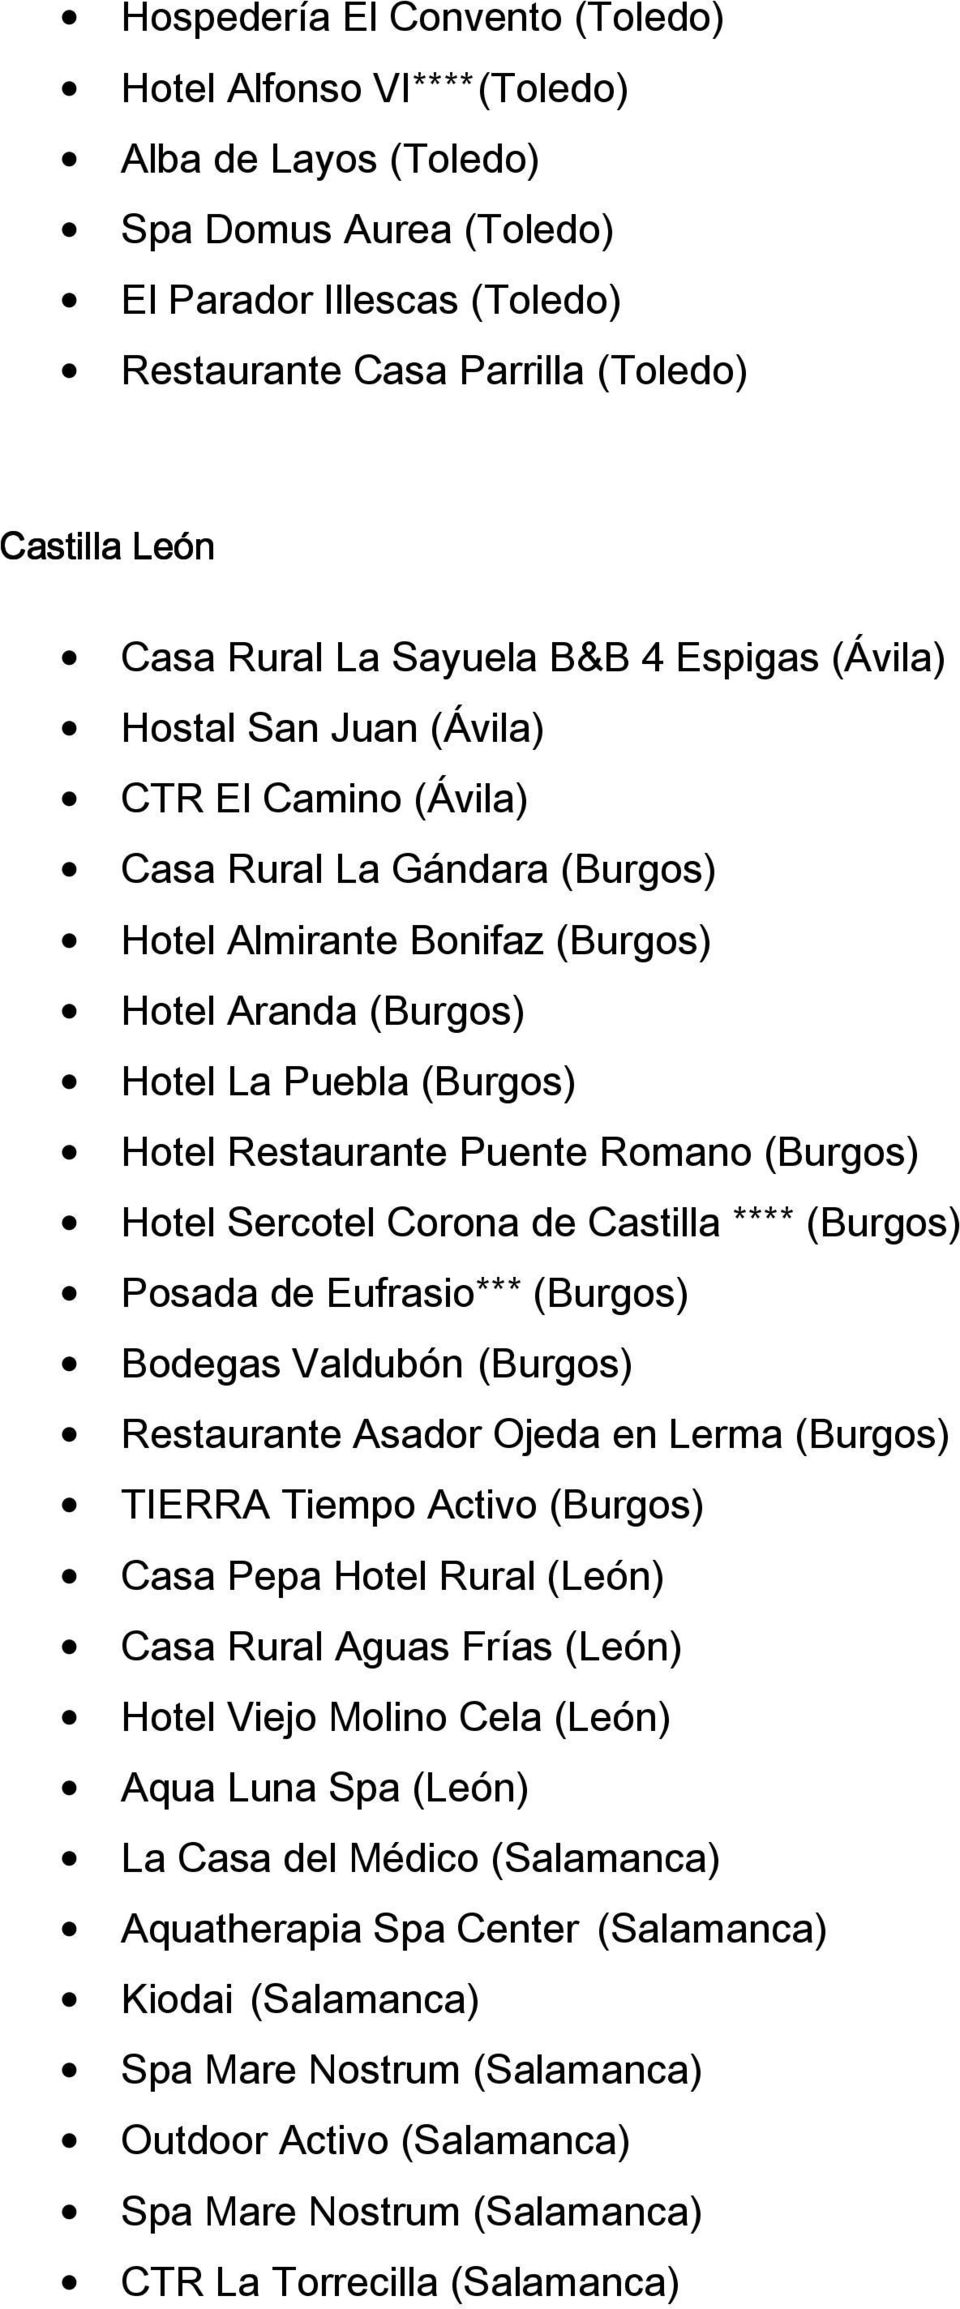 Restaurante Puente Romano (Burgos) Hotel Sercotel Corona de Castilla **** (Burgos) Posada de Eufrasio*** (Burgos) Bodegas Valdubón (Burgos) Restaurante Asador Ojeda en Lerma (Burgos) TIERRA Tiempo